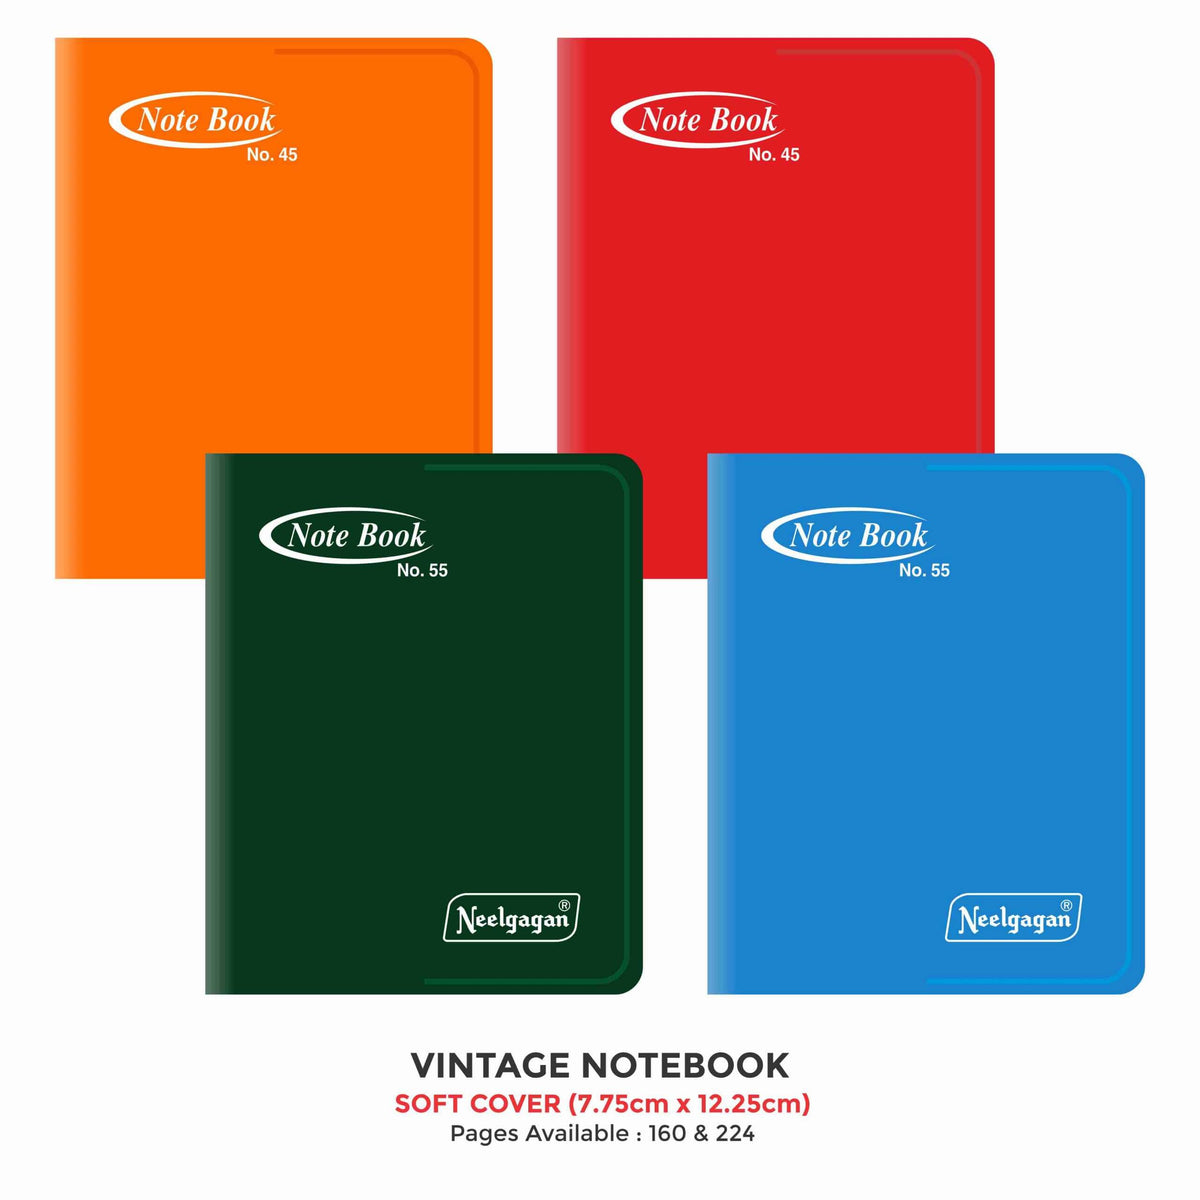 Vintage Notebook, (No. 45 & 55), (9.25cm x 12.25cm) Soft Cover Plastic